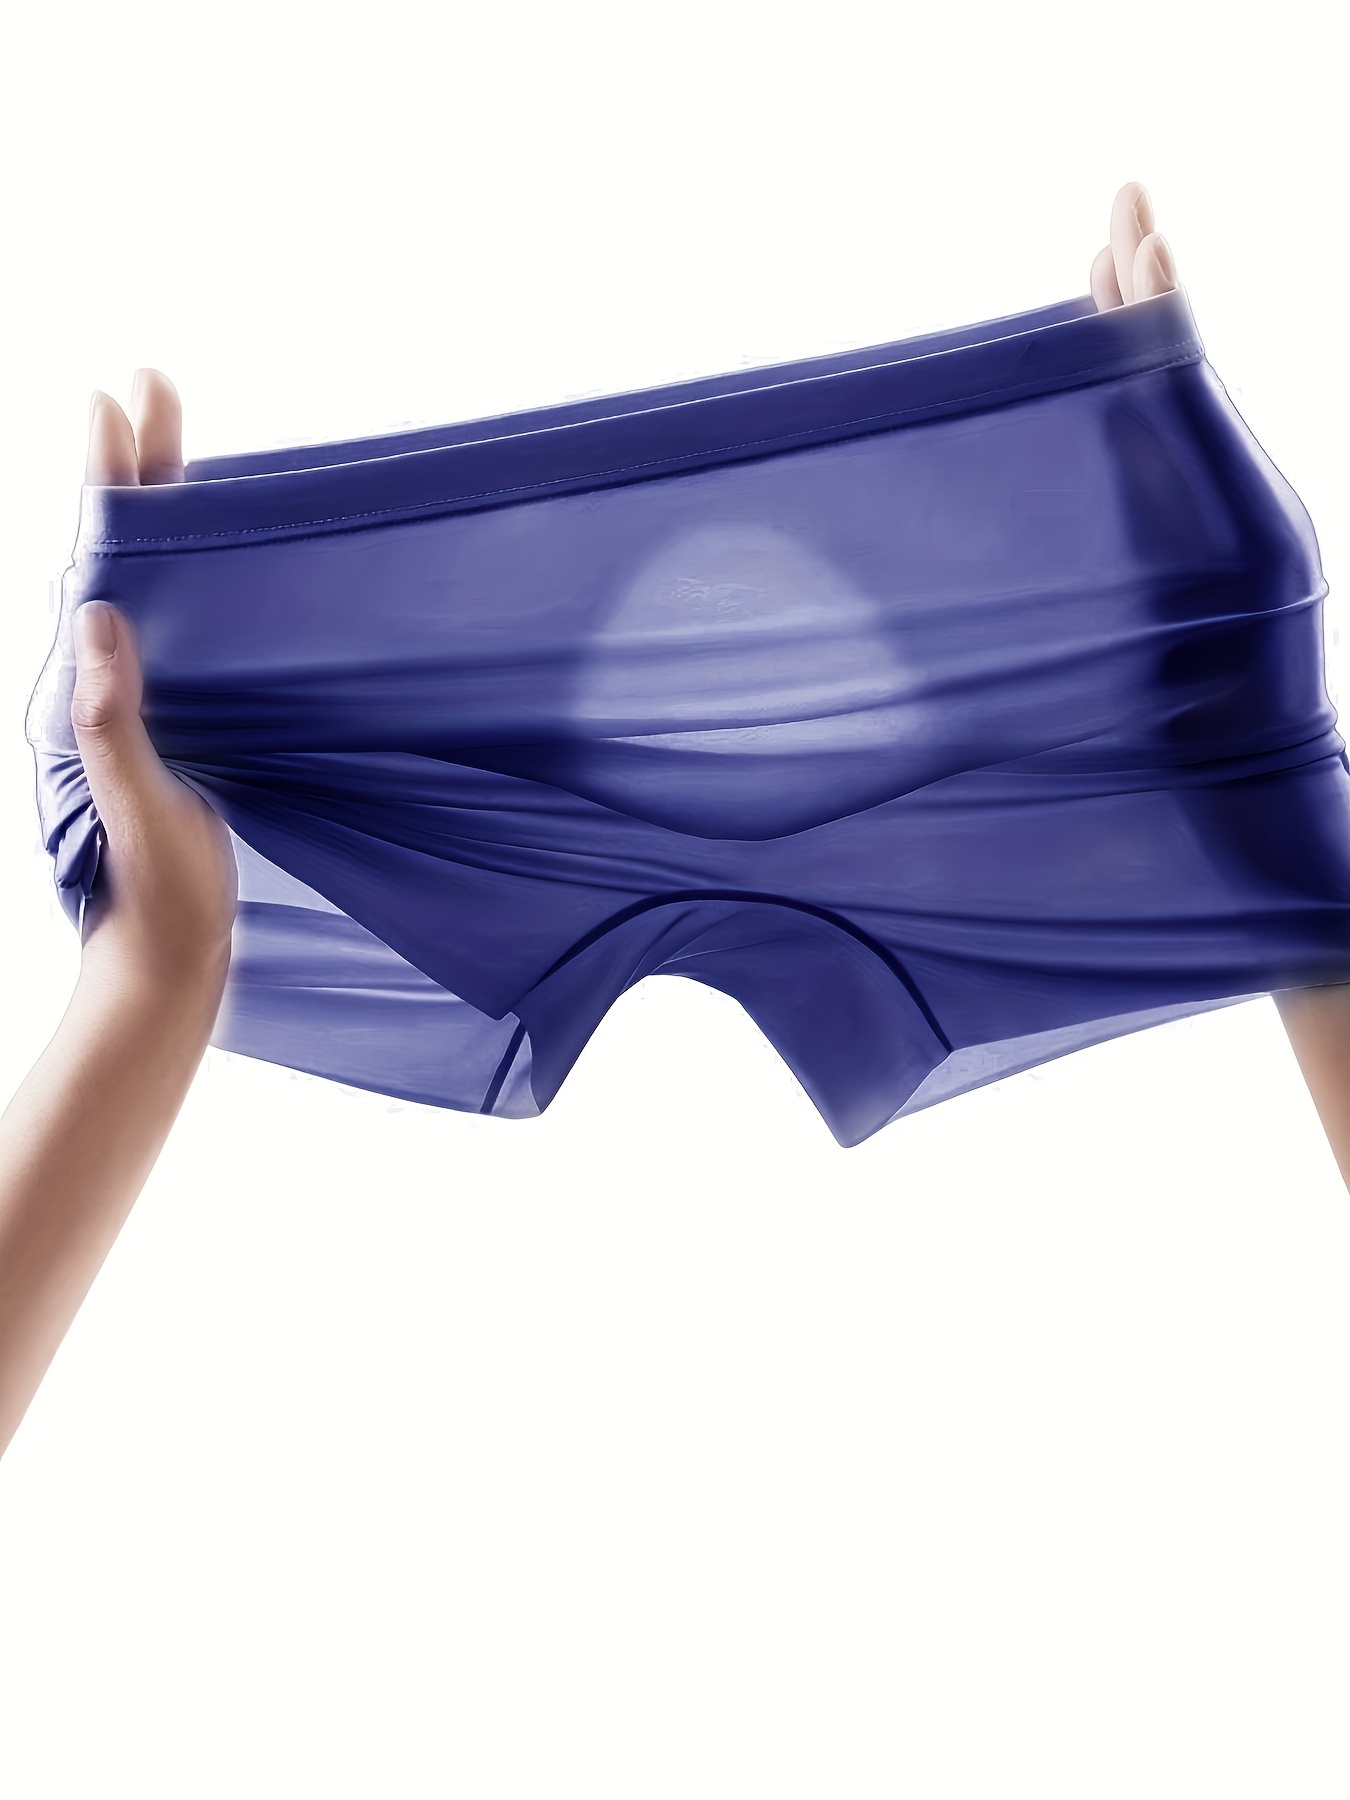 Men's Silk Underwear, Soft Breathable Ice Silk Underwear for Men